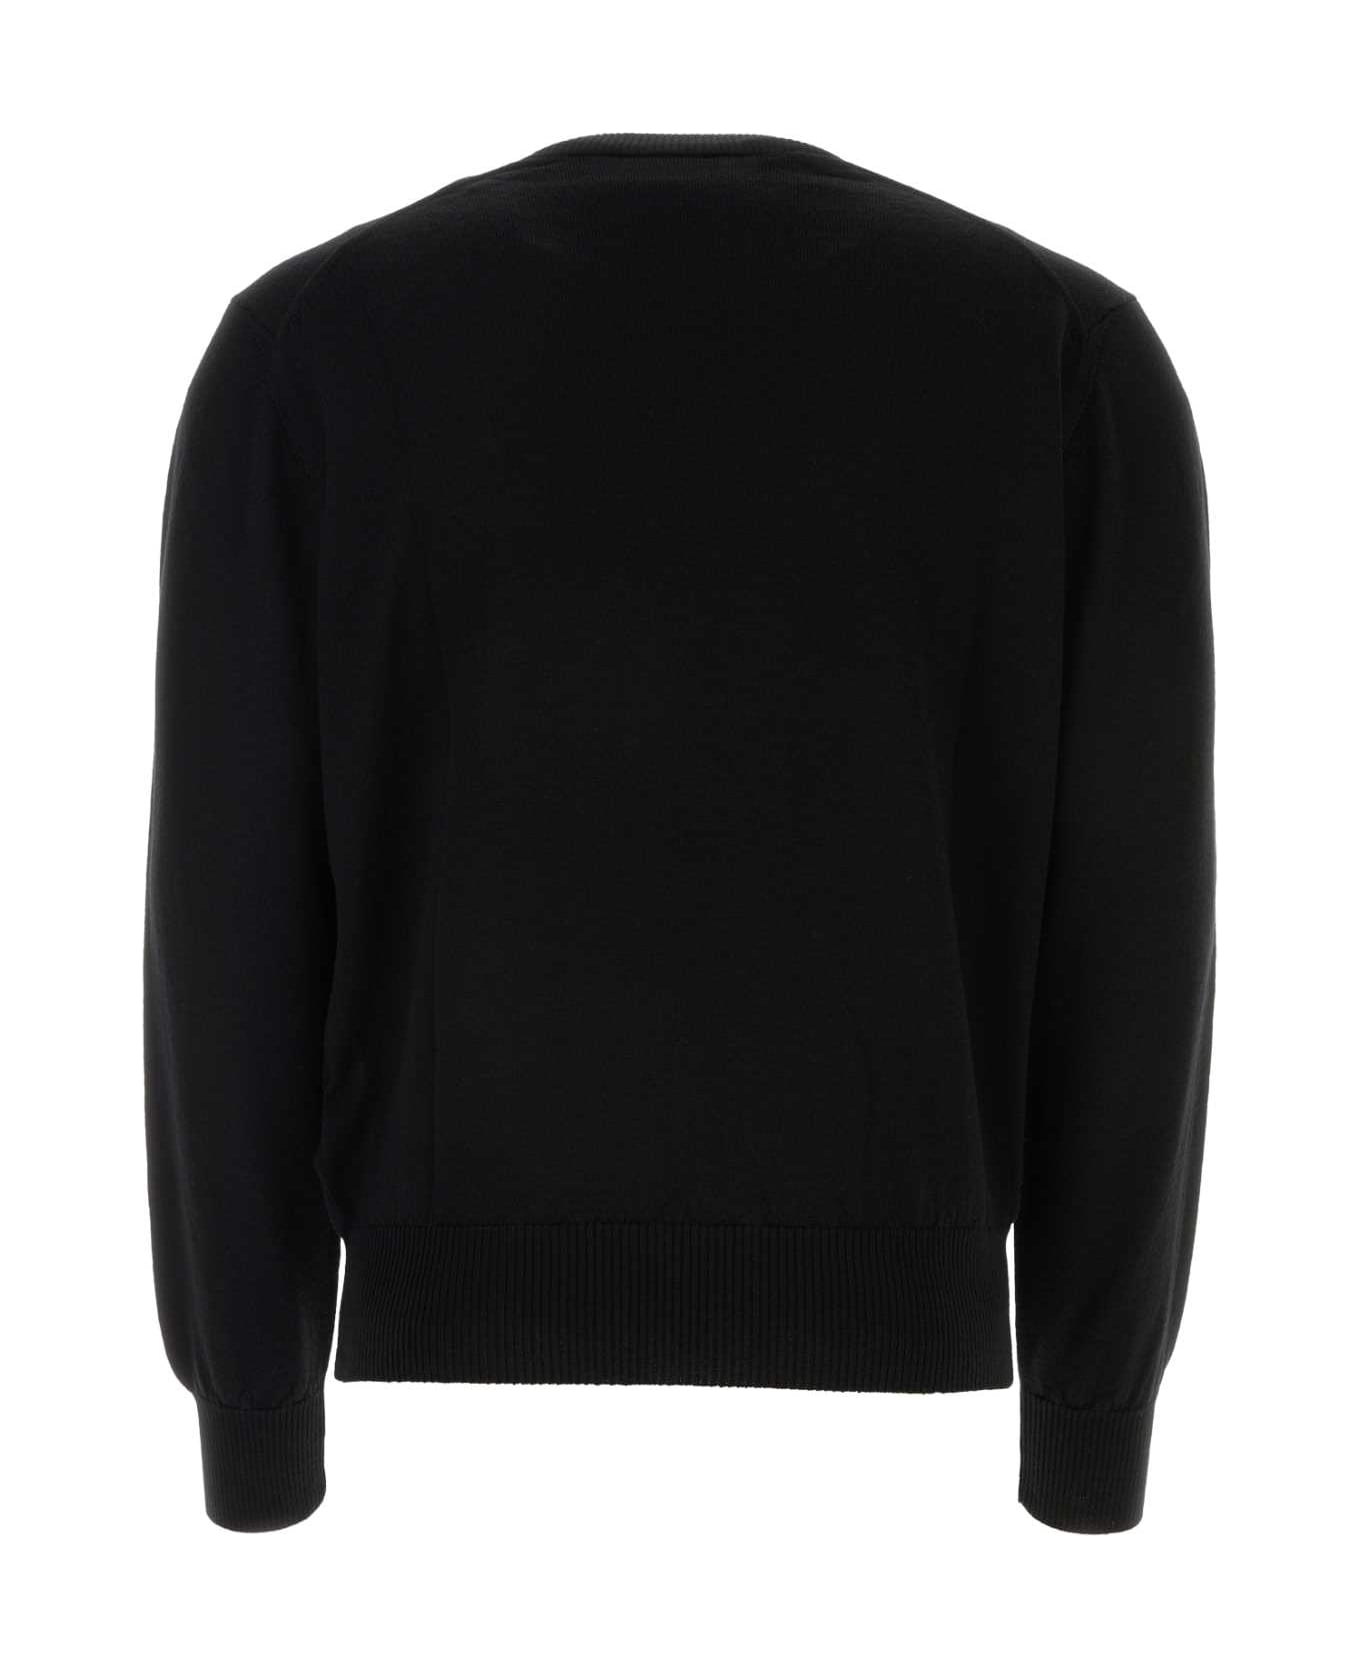 Ami Alexandre Mattiussi Black Wool Sweater - BLACK